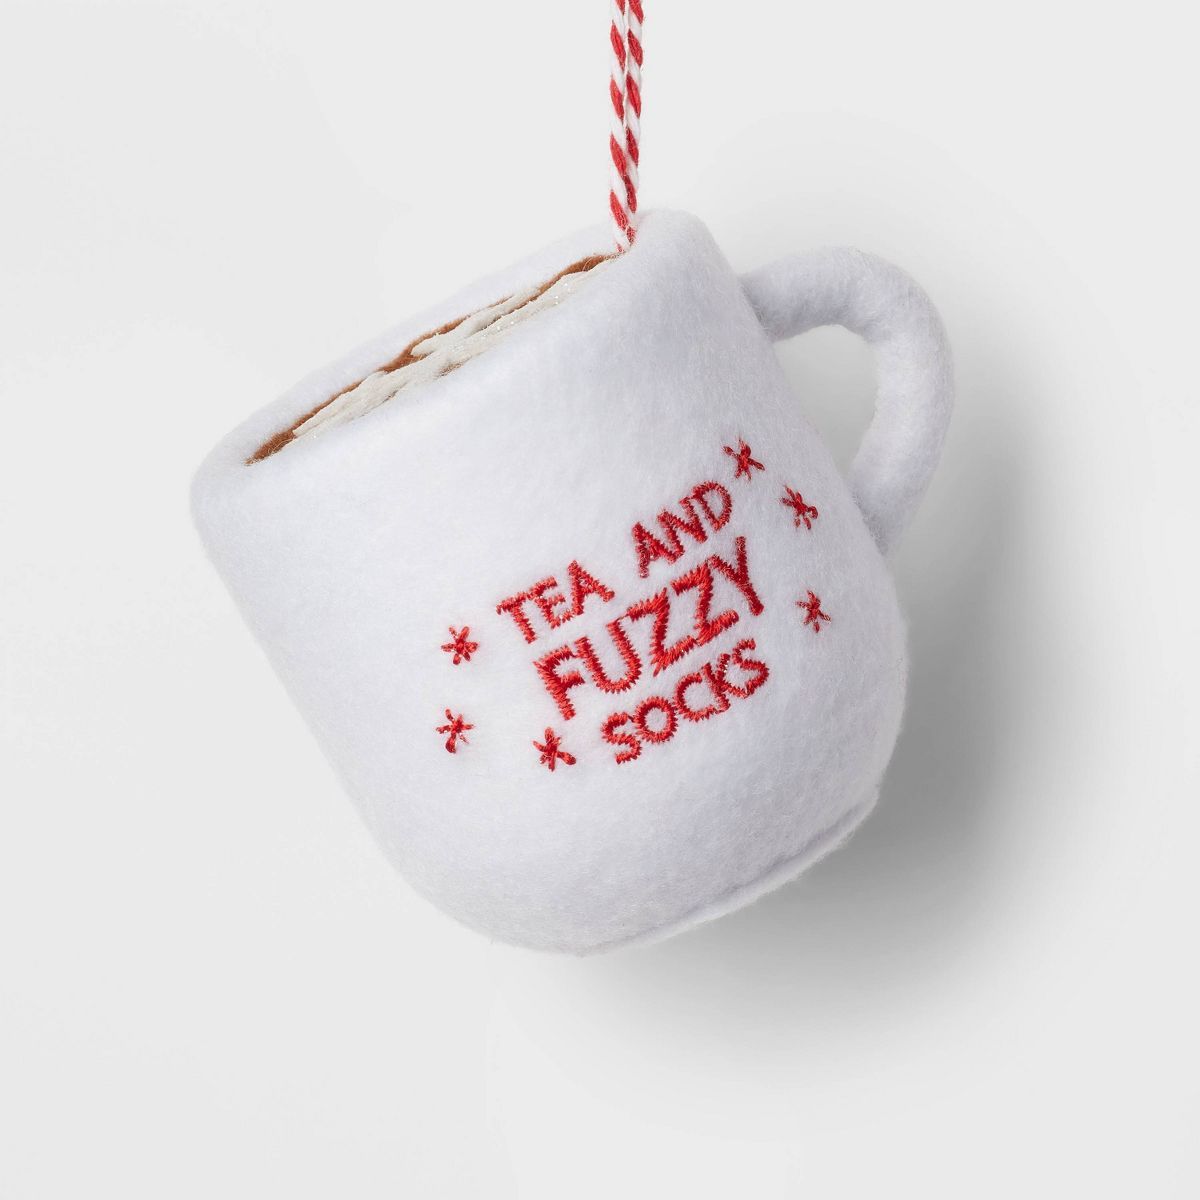 Felt 'Tea and Fuzzy Socks' Mug Christmas Tree Ornament White - Wondershop™ | Target